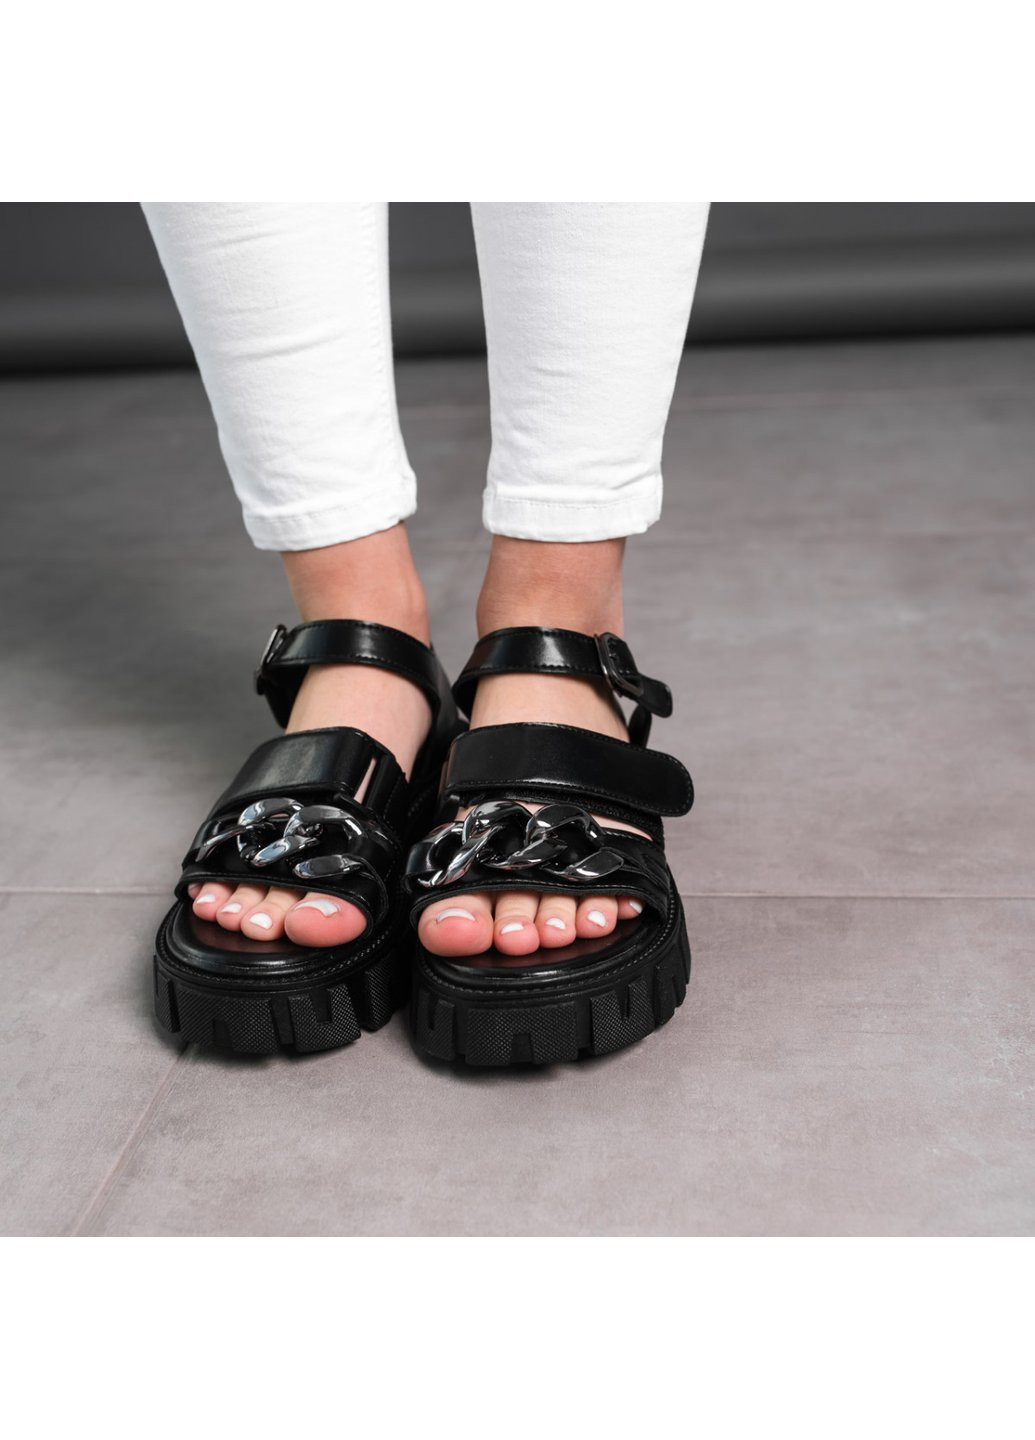 Повседневные женские сандалии nala 3665 черный Fashion